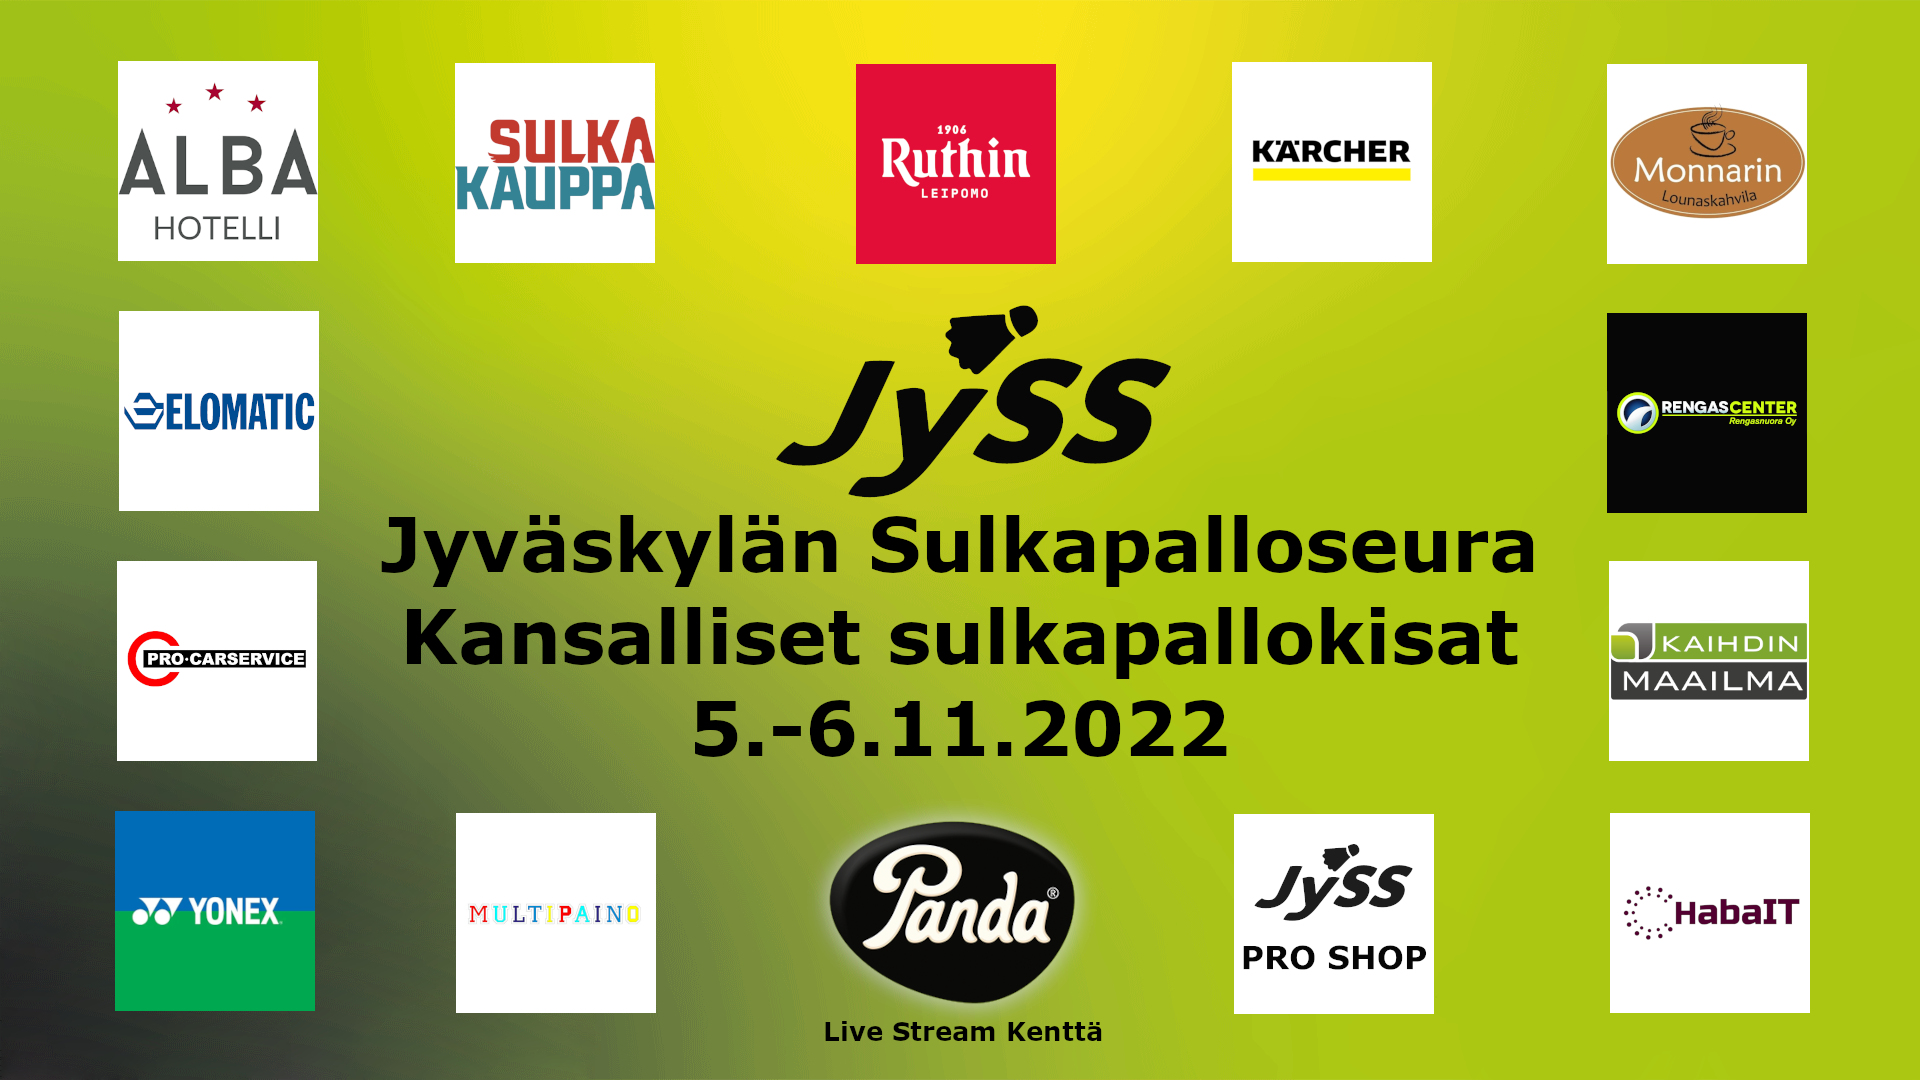 JYSS_kansalliset_5.-6.11.20222_Sponsorit.jpg